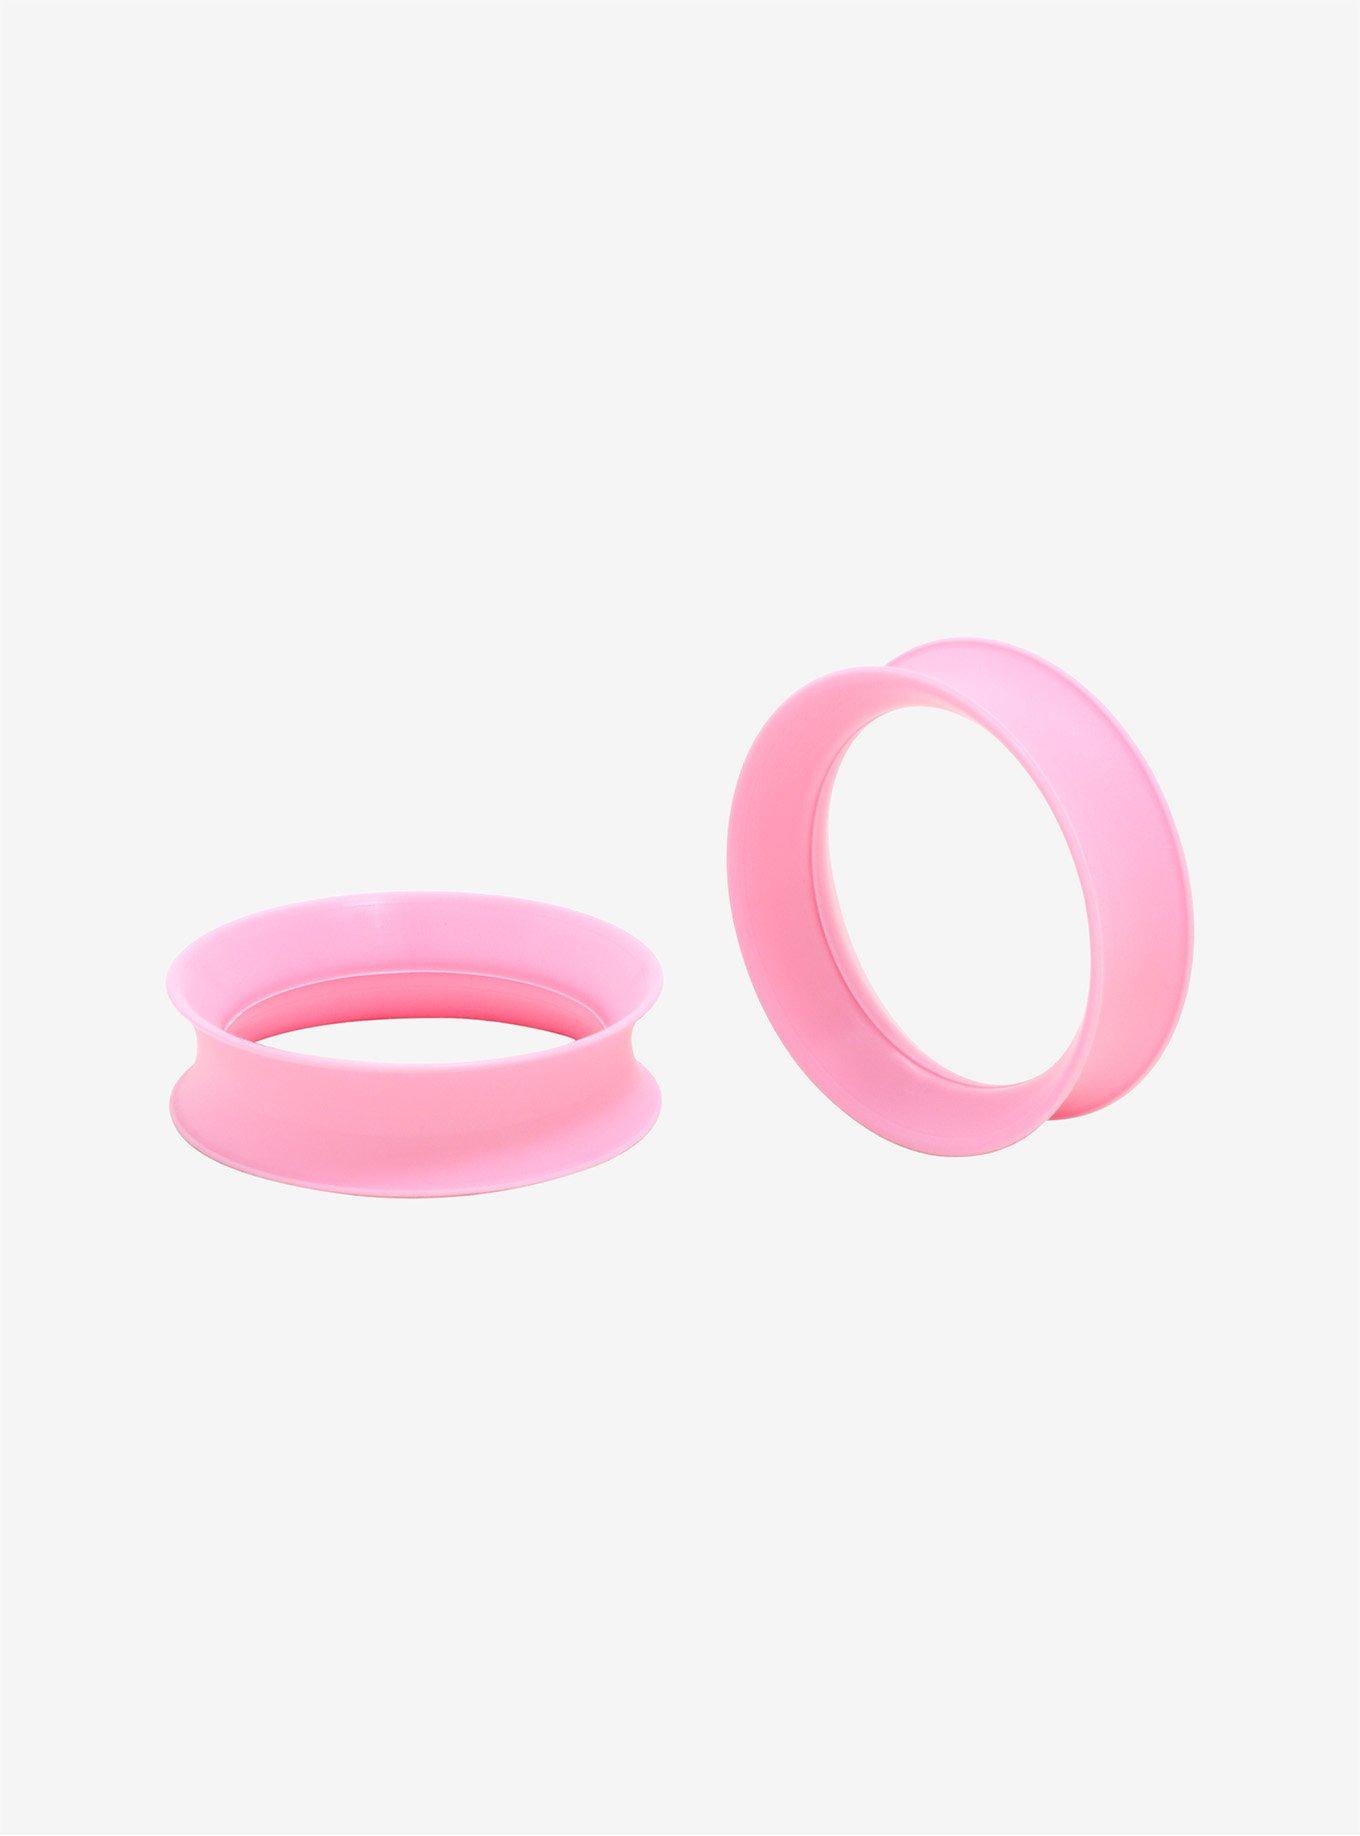 Kaos Softwear Cotton Candy Pink Earskin Eyelet Plug 2 Pack, PINK, hi-res